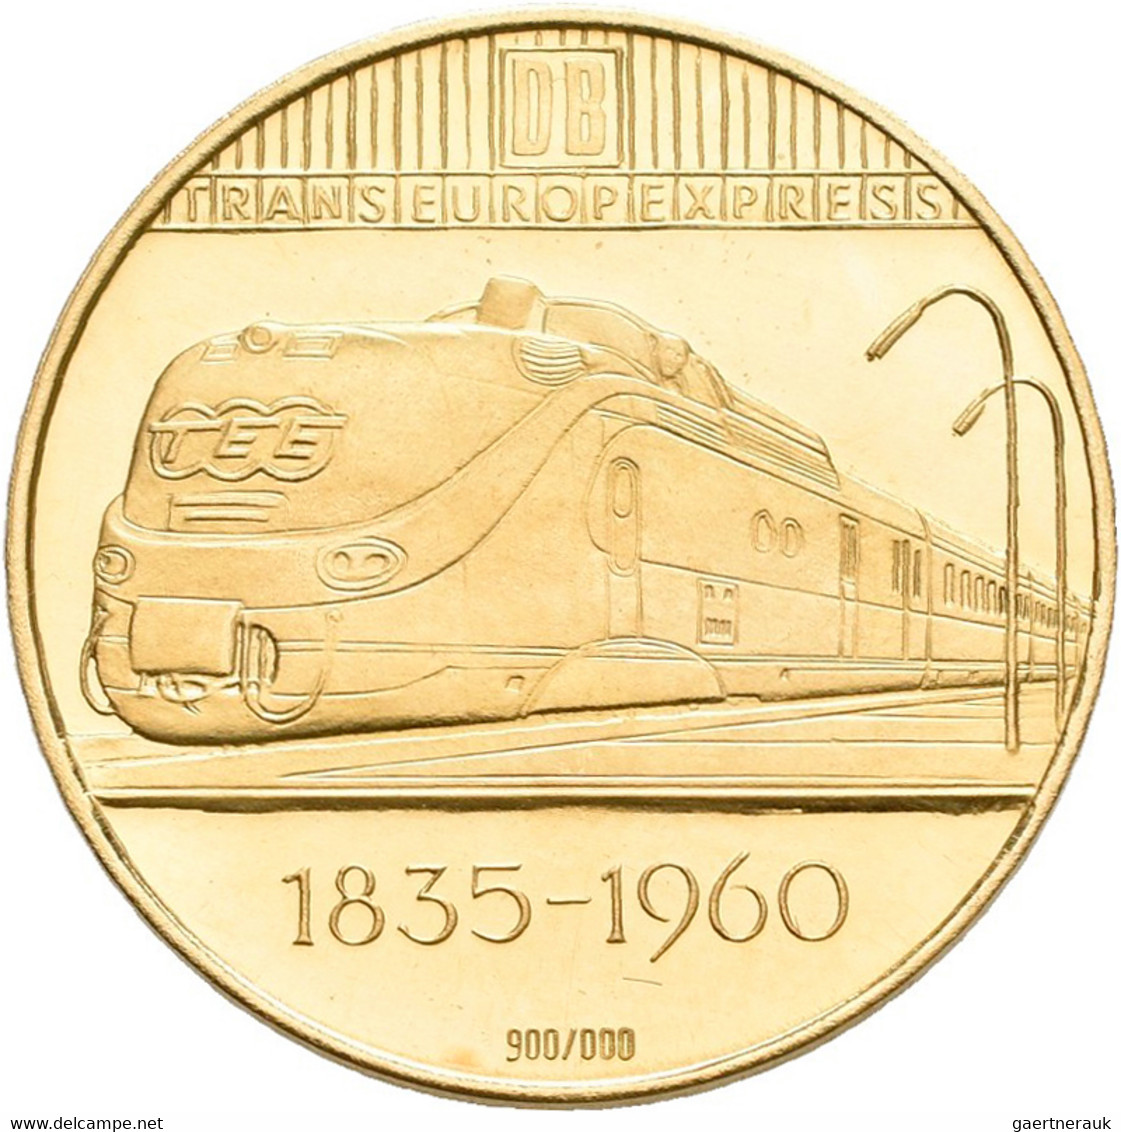 Medaillen alle Welt: Lot 4 Goldmedaillen, dabei: 125 Jahre Deutsche Eisenbahn "Der Adler" (3,50 g 90